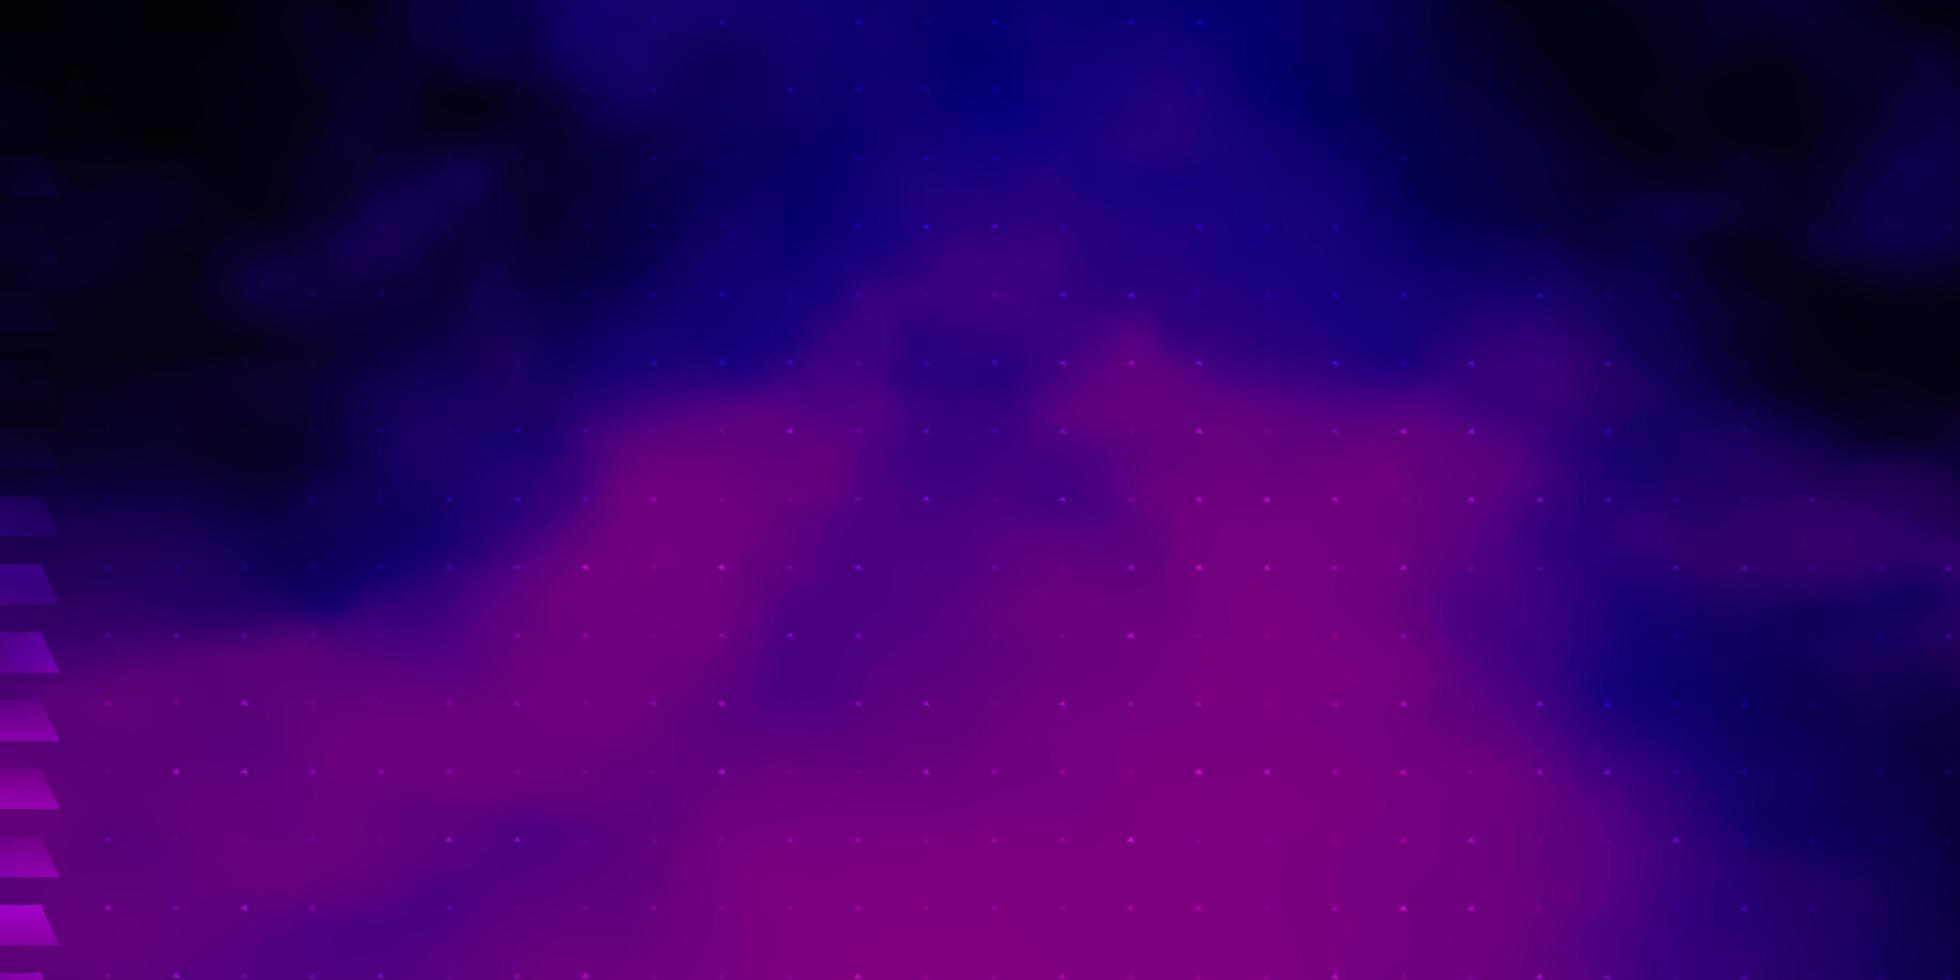 sfondo vettoriale viola scuro in stile poligonale.